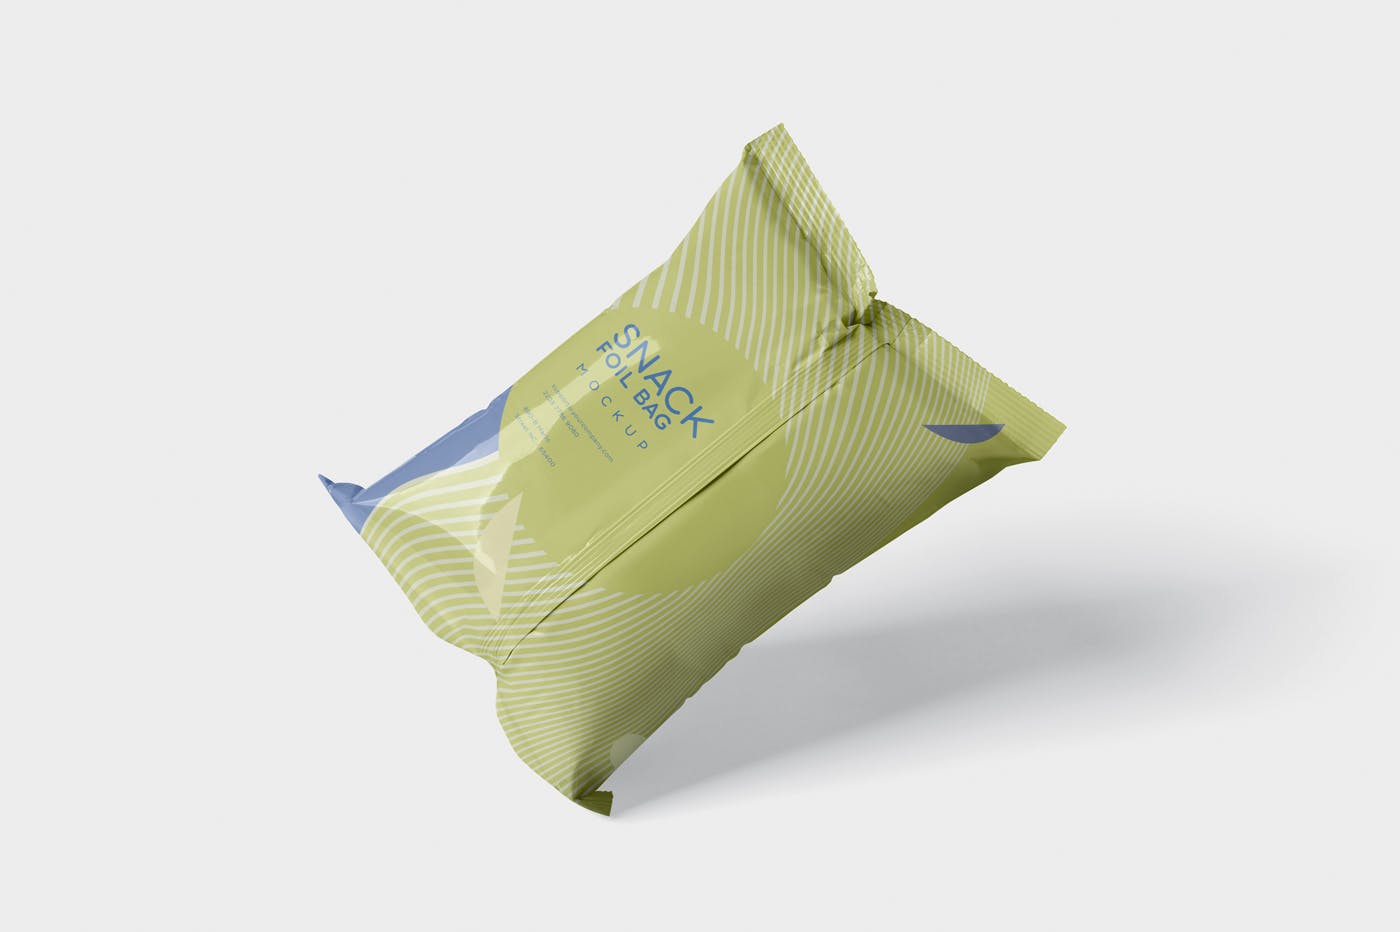 小吃零食铝箔袋/塑料包装袋设计图第一素材精选 Snack Foil Bag Mockup – Plastic插图(4)